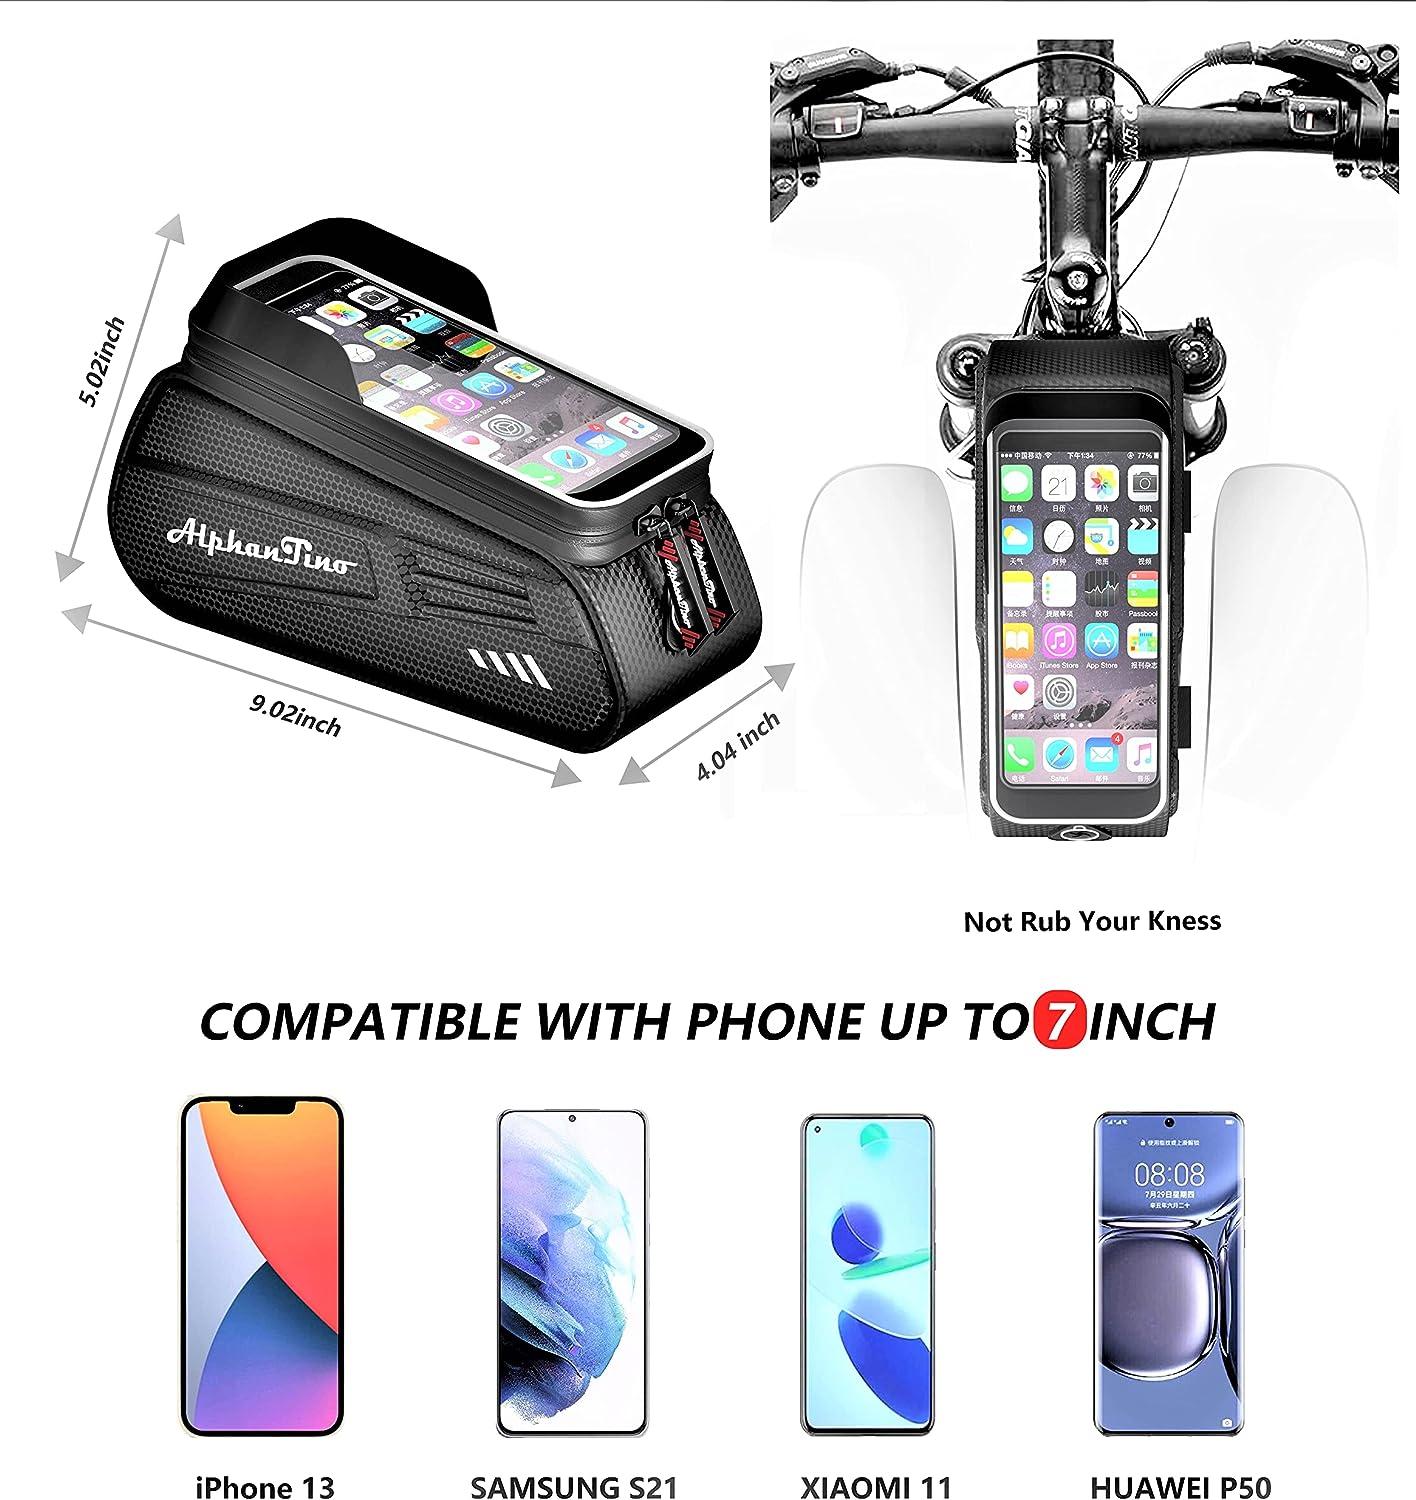 Bike Phone Front Frame Bag, Waterproof Bicycle Phone Mount Top